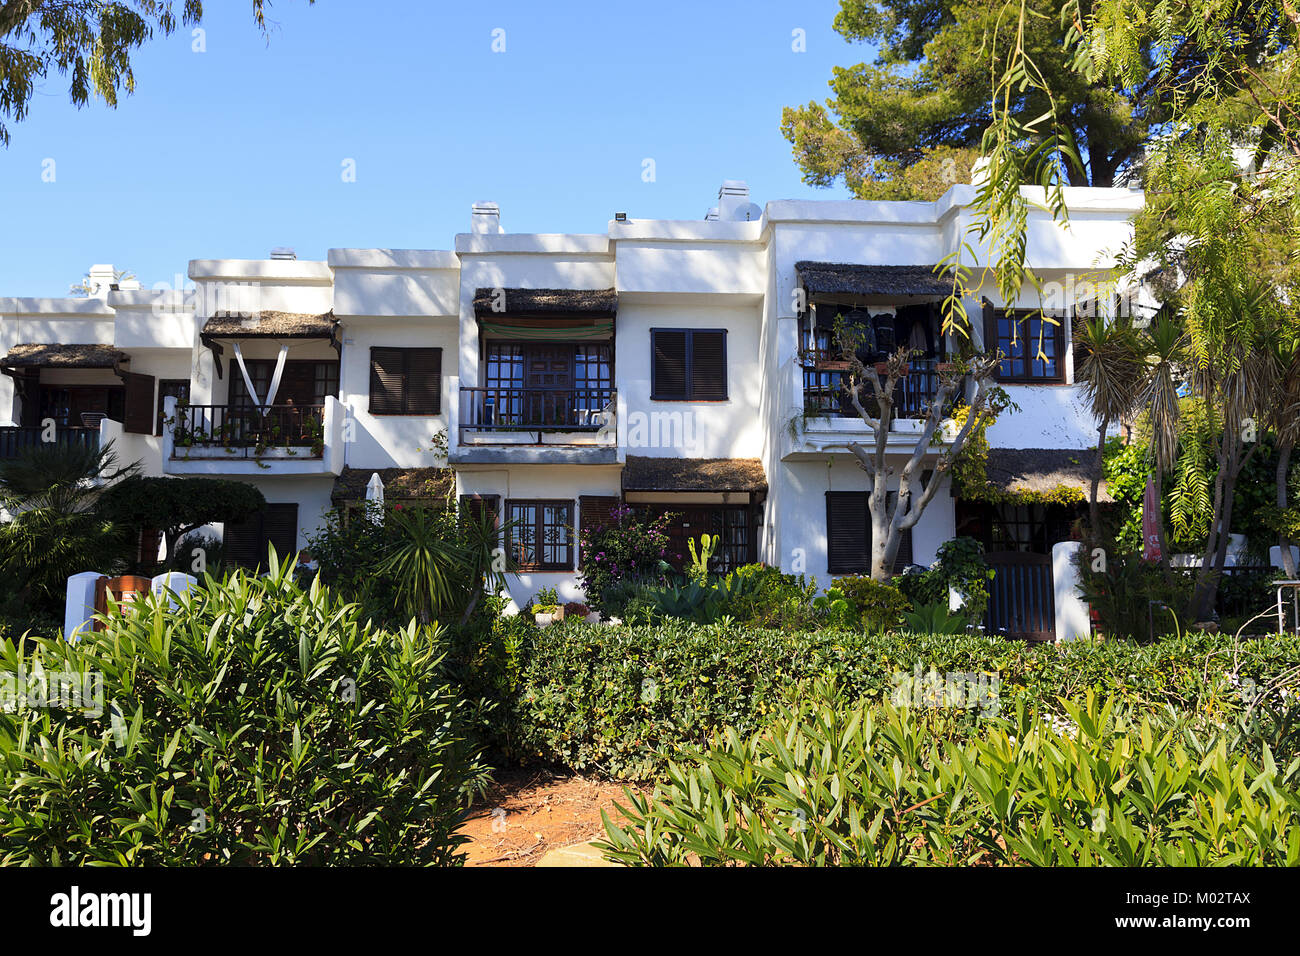 Villas facing onto the promenade at Las Fuentes Beach, Alcossebre, Spain Stock Photo